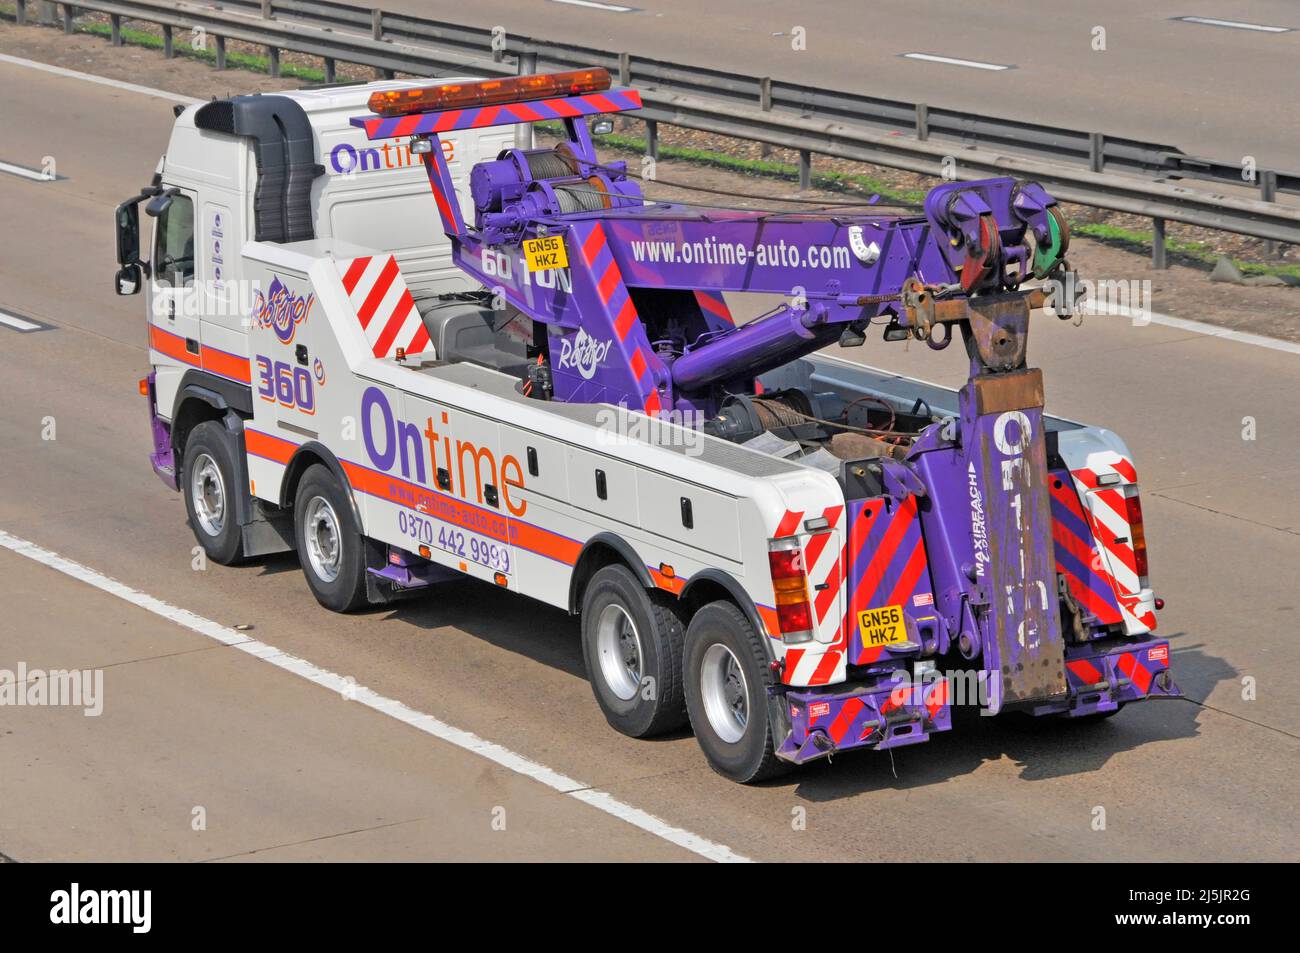 Vista trasera y lateral de la colorida Ontime auto hgv levantamiento pesado recuperación camión vehículo conduciendo por carretera Inglaterra Reino Unido Foto de stock